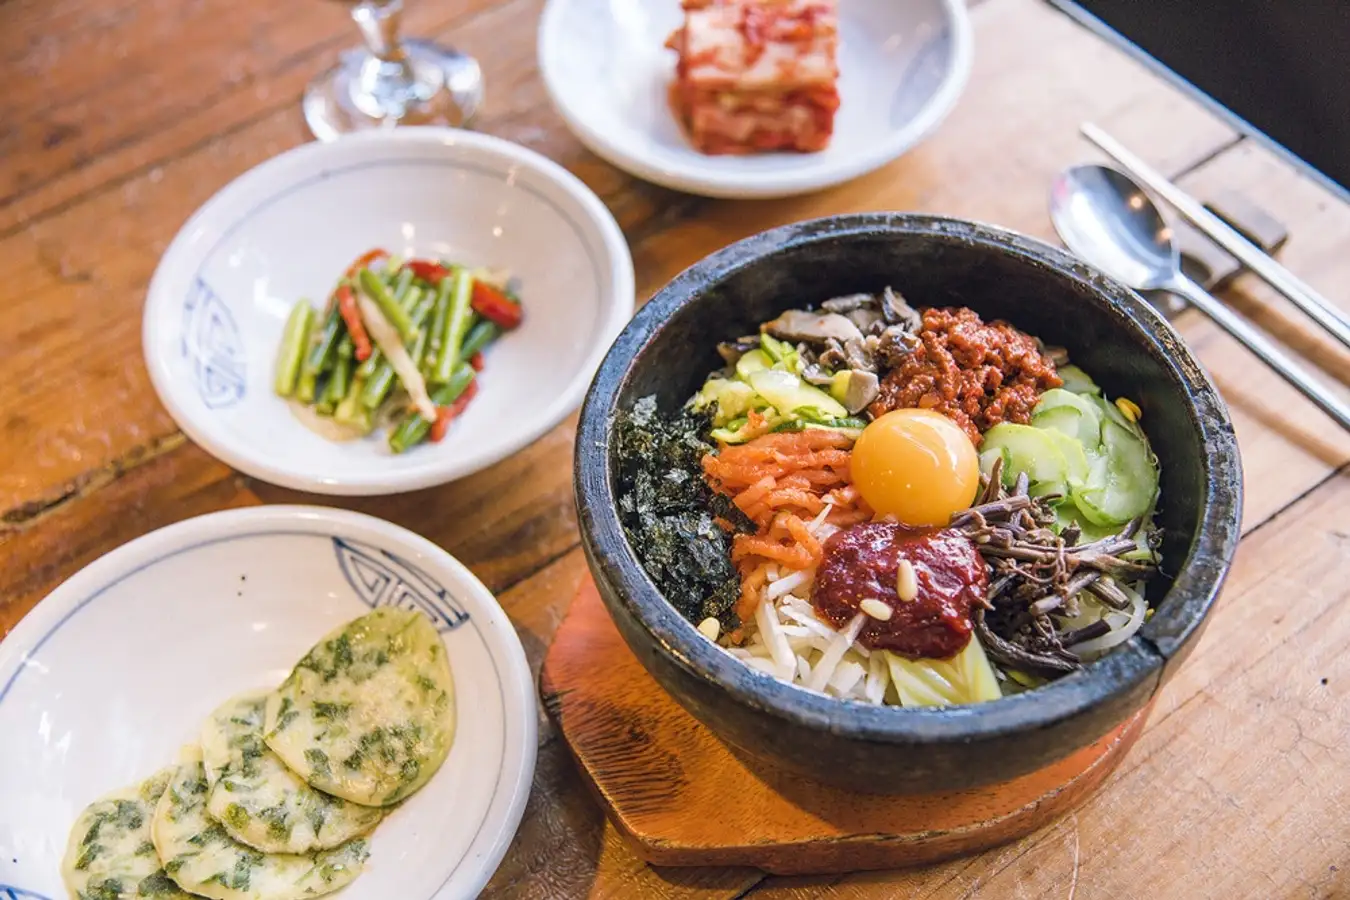 Khám phá ẩm thực độc đáo ở Incheon Nền ẩm thực đa dạng của Hàn Quốc có thể chiều lòng mọi du khách khi đến với thành phố Incheon. Tuy nhiên, nếu chỉ có vài ngày để khám phá thành phố này, bạn có thể lựa chọn thưởng thức các món ăn độc đáo sau.  Soondubu Jjigae – đậu phụ hầm cay Theo kinh nghiệm du lịch Incheon, Soondubu Jjigae là món ăn ngon nhất mà bạn nhất định phải thử. Đặc biệt, nếu bạn yêu thích những món cay, thì Soondubu Jjigae chắc chắn sẽ khiến bạn cảm thấy hài lòng. Thành phần chính của món ăn đậu phụ hầm cay gồm đậu phụ non,các loại nấm (nấm hương, nấm đùi gà hoặc nấm kim), thịt bò hoặc thịt lợn, ngao, tôm và rau thơm.  Ngoài ra, nước dùng của món ăn này là nước hầm xương được ninh trong nhiều giờ đồng hồ. Các đầu bếp sẽ trình bày món ăn trong bát đá để giữ nhiệt lâu hơn. Nếu bạn yêu cầu, đầu bếp sẽ cho thêm một miếng trứng ốp la lên trên để tạo thêm hương vị đậm đà cho món ăn.  Món Soondubu Jjigae – đậu phụ hầm cay Soondubu Jjigae là món ăn ngon nhất mà bạn nhất định phải thử. @Tiffany Angela  Kkotgetang – Cua xanh luộc Incheon là cảng biển lớn thứ 3 của Hàn Quốc, sau Seoul và Busan. Vì vậy, khi đến đây, bạn sẽ được thưởng thức những món hải sản tươi ngon, được đánh bắt tự nhiên từ vùng biển địa phương. Theo kinh nghiệm du lịch Incheon Hàn Quốc, người ta chỉ bắt cua xanh để luộc vào tháng 6. Vì đây là thời điểm mà cua xanh sinh sản và trọng lượng đạt đến mức cao nhất.  Khi lựa chọn loại hải sản này, bạn nên lựa những con vỏ cứng, bụng đỏ, và bọc trứng màu vàng. Món ăn này vô cùng nổi tiếng và thu hút lượng khách đông đảo đến các quán hải sản địa phương để thưởng thức. Đặc biệt, người bản địa thường ăn kèm món này với mù tạt, nước sốt ướt và kim chi.  Món Kkotgetang – Cua xanh luộc Kkotgetang thu hút lượng khách đông đảo đến các quán hải sản địa phương. @Finch JungSooNae  Multeombeongitang – Cá nhám chưng tương Cá nhám dẹp được đánh bắt tự nhiên ở vùng biển Incheon và được các đầu bếp tài ba chế biến thành nhiều món hấp dẫn. Người dân thường chưng loại cá này với nước tương cay.  Theo kinh nghiệm du lịch Incheon tự túc, món ăn này thường được ăn kèm với tương ớt truyền thống của người Hàn Quốc, mù tạt và kim chi. Khi thưởng thức món ăn này, bạn nhất định phải gọi thêm một chai Soju để nhấm nháp.